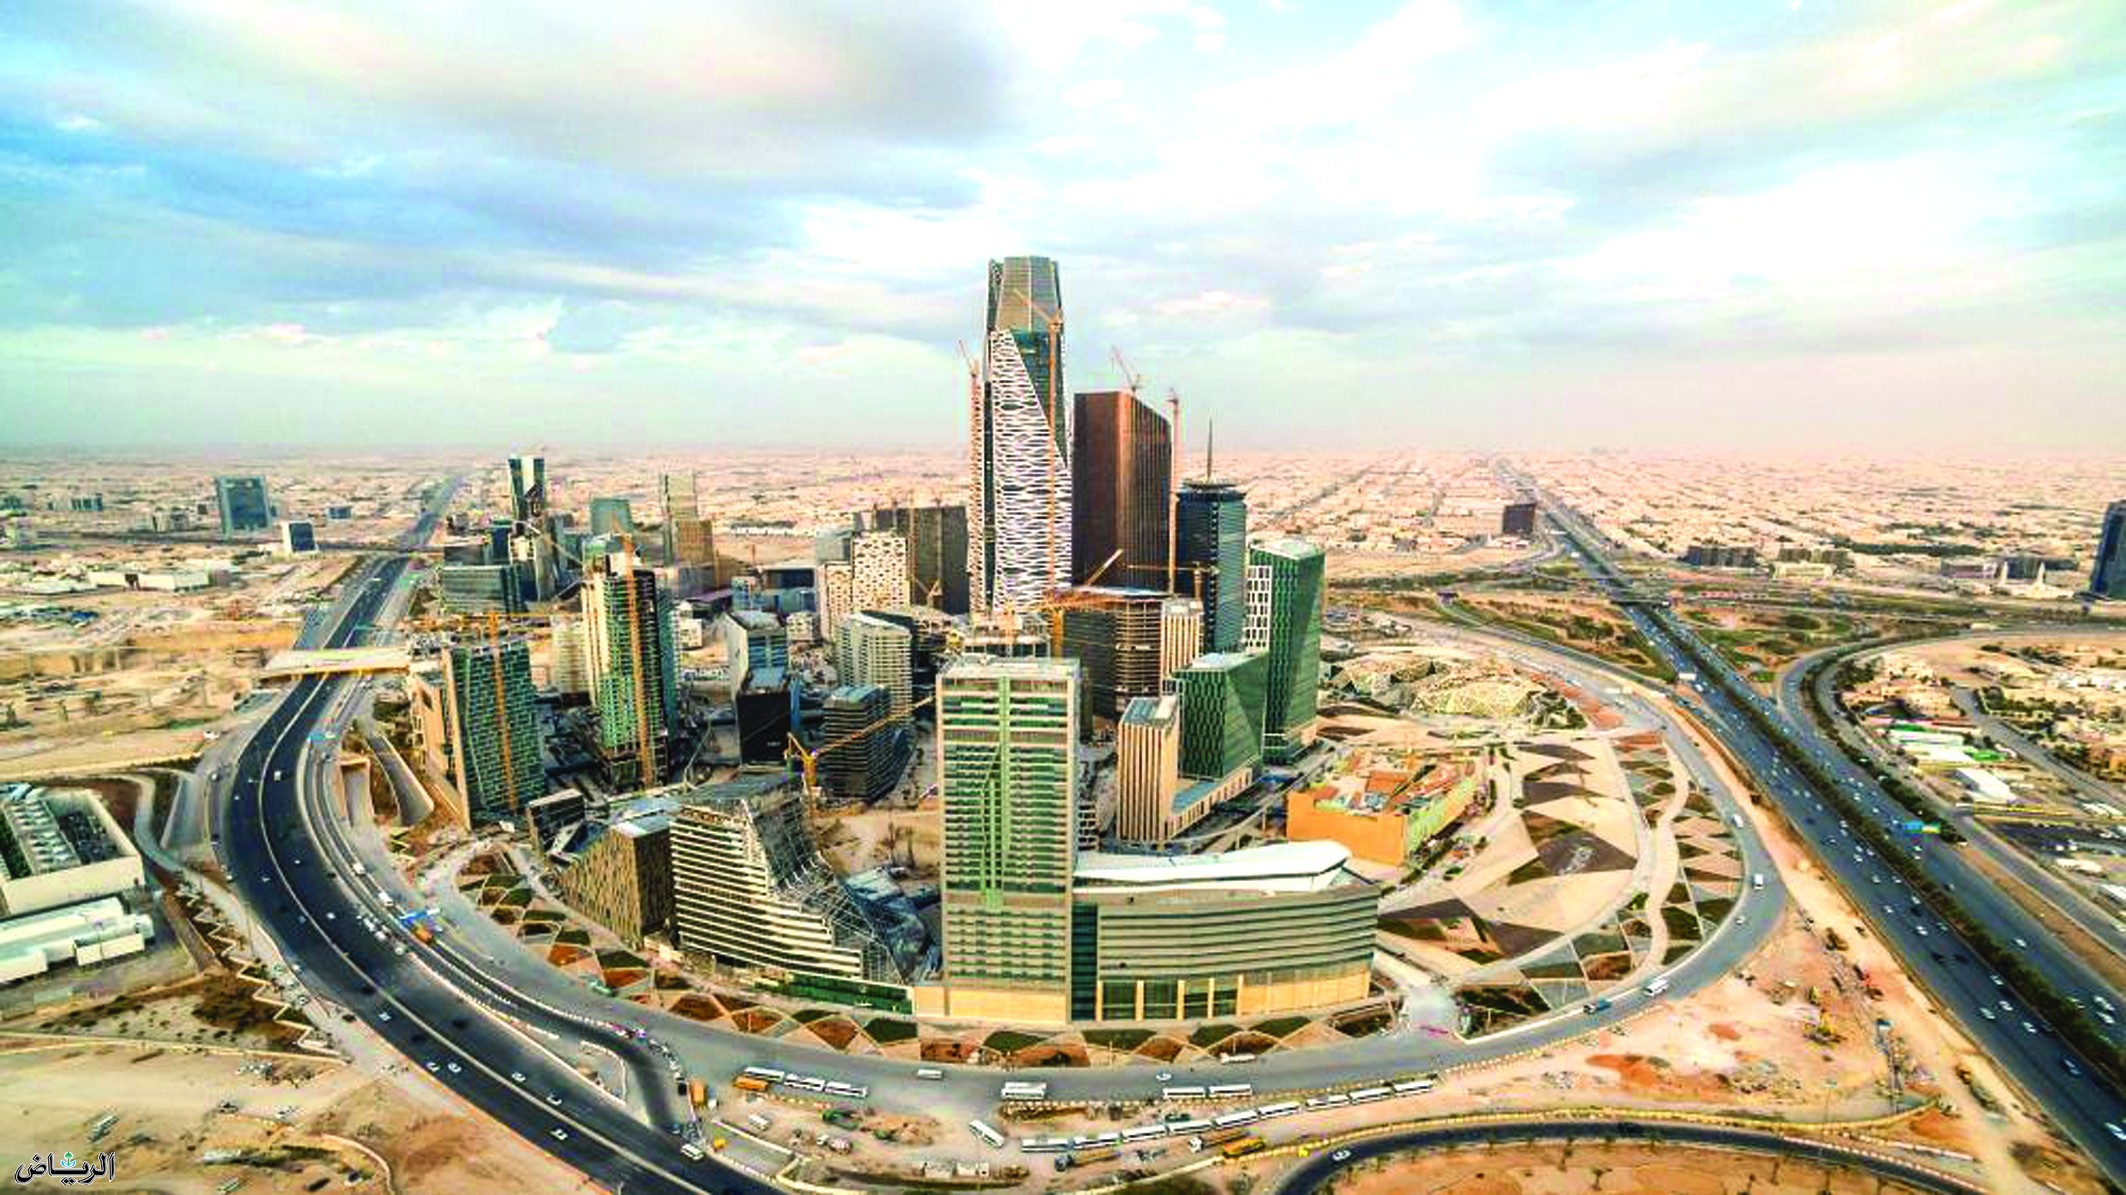 أفضل مكاتب الاستقدام في الرياض 1442 وخطوات التسجيل في موقع مساند